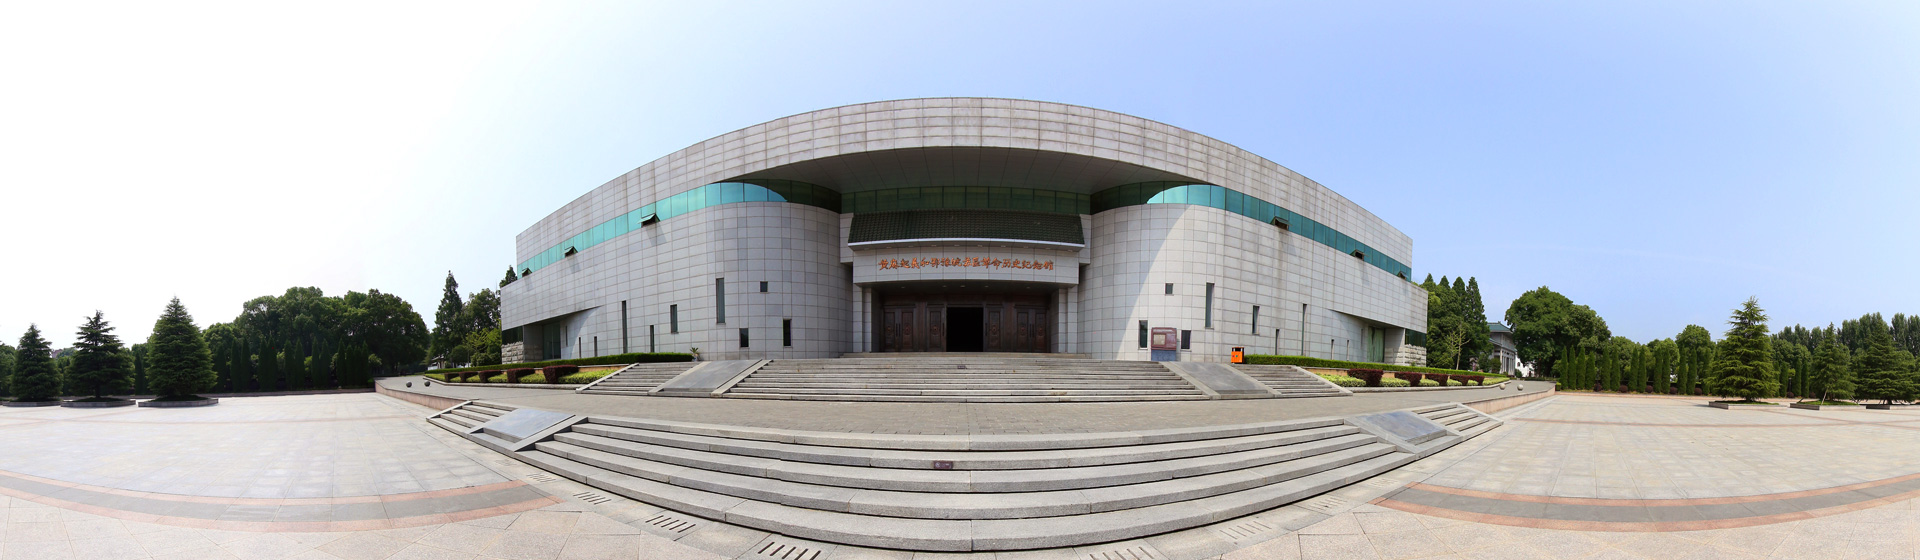 黃麻起義和鄂豫皖蘇區革命歷史紀念館